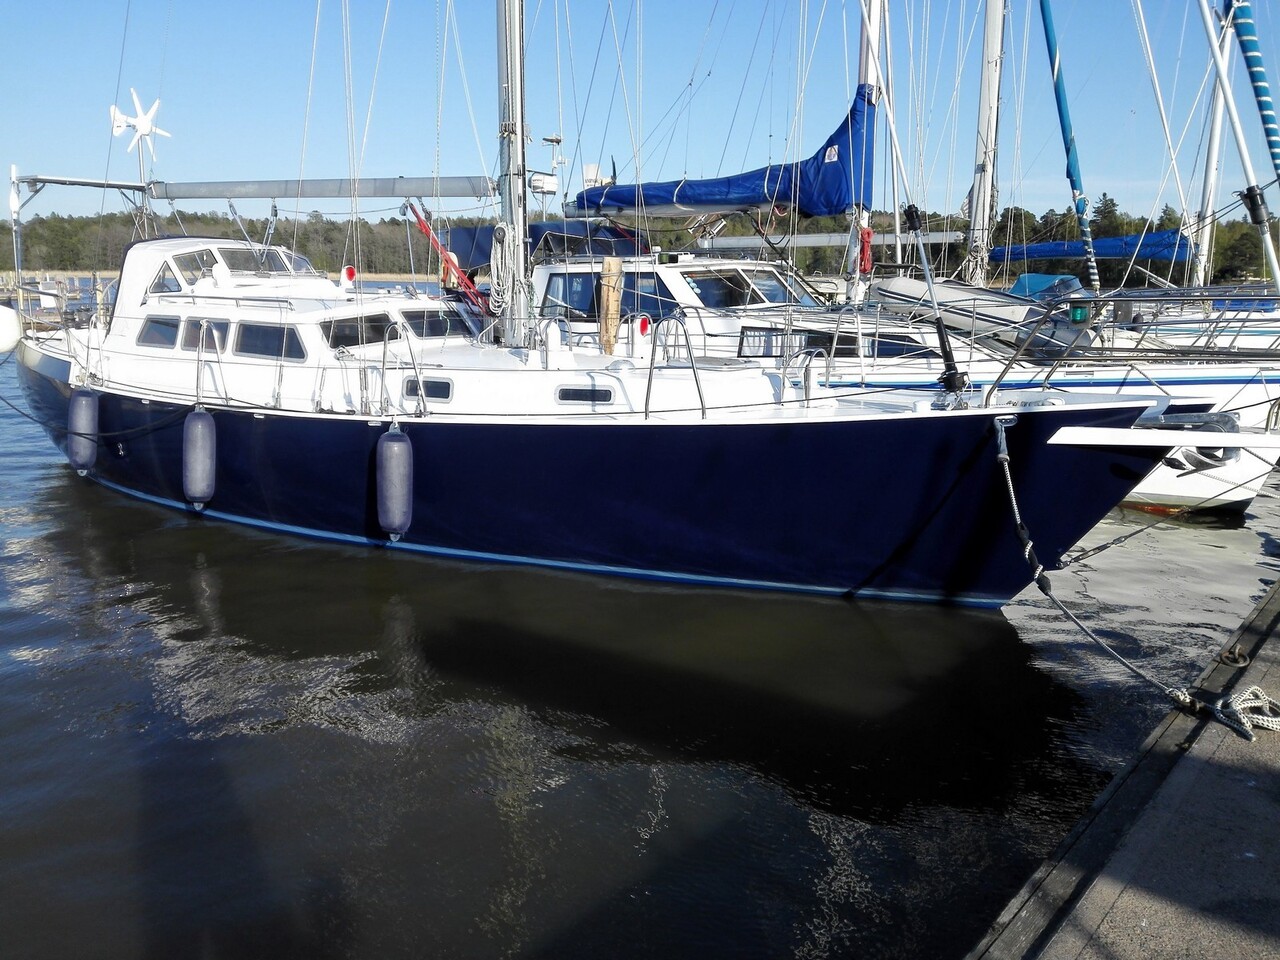 Baltic Pride 42 (sailboat) for sale